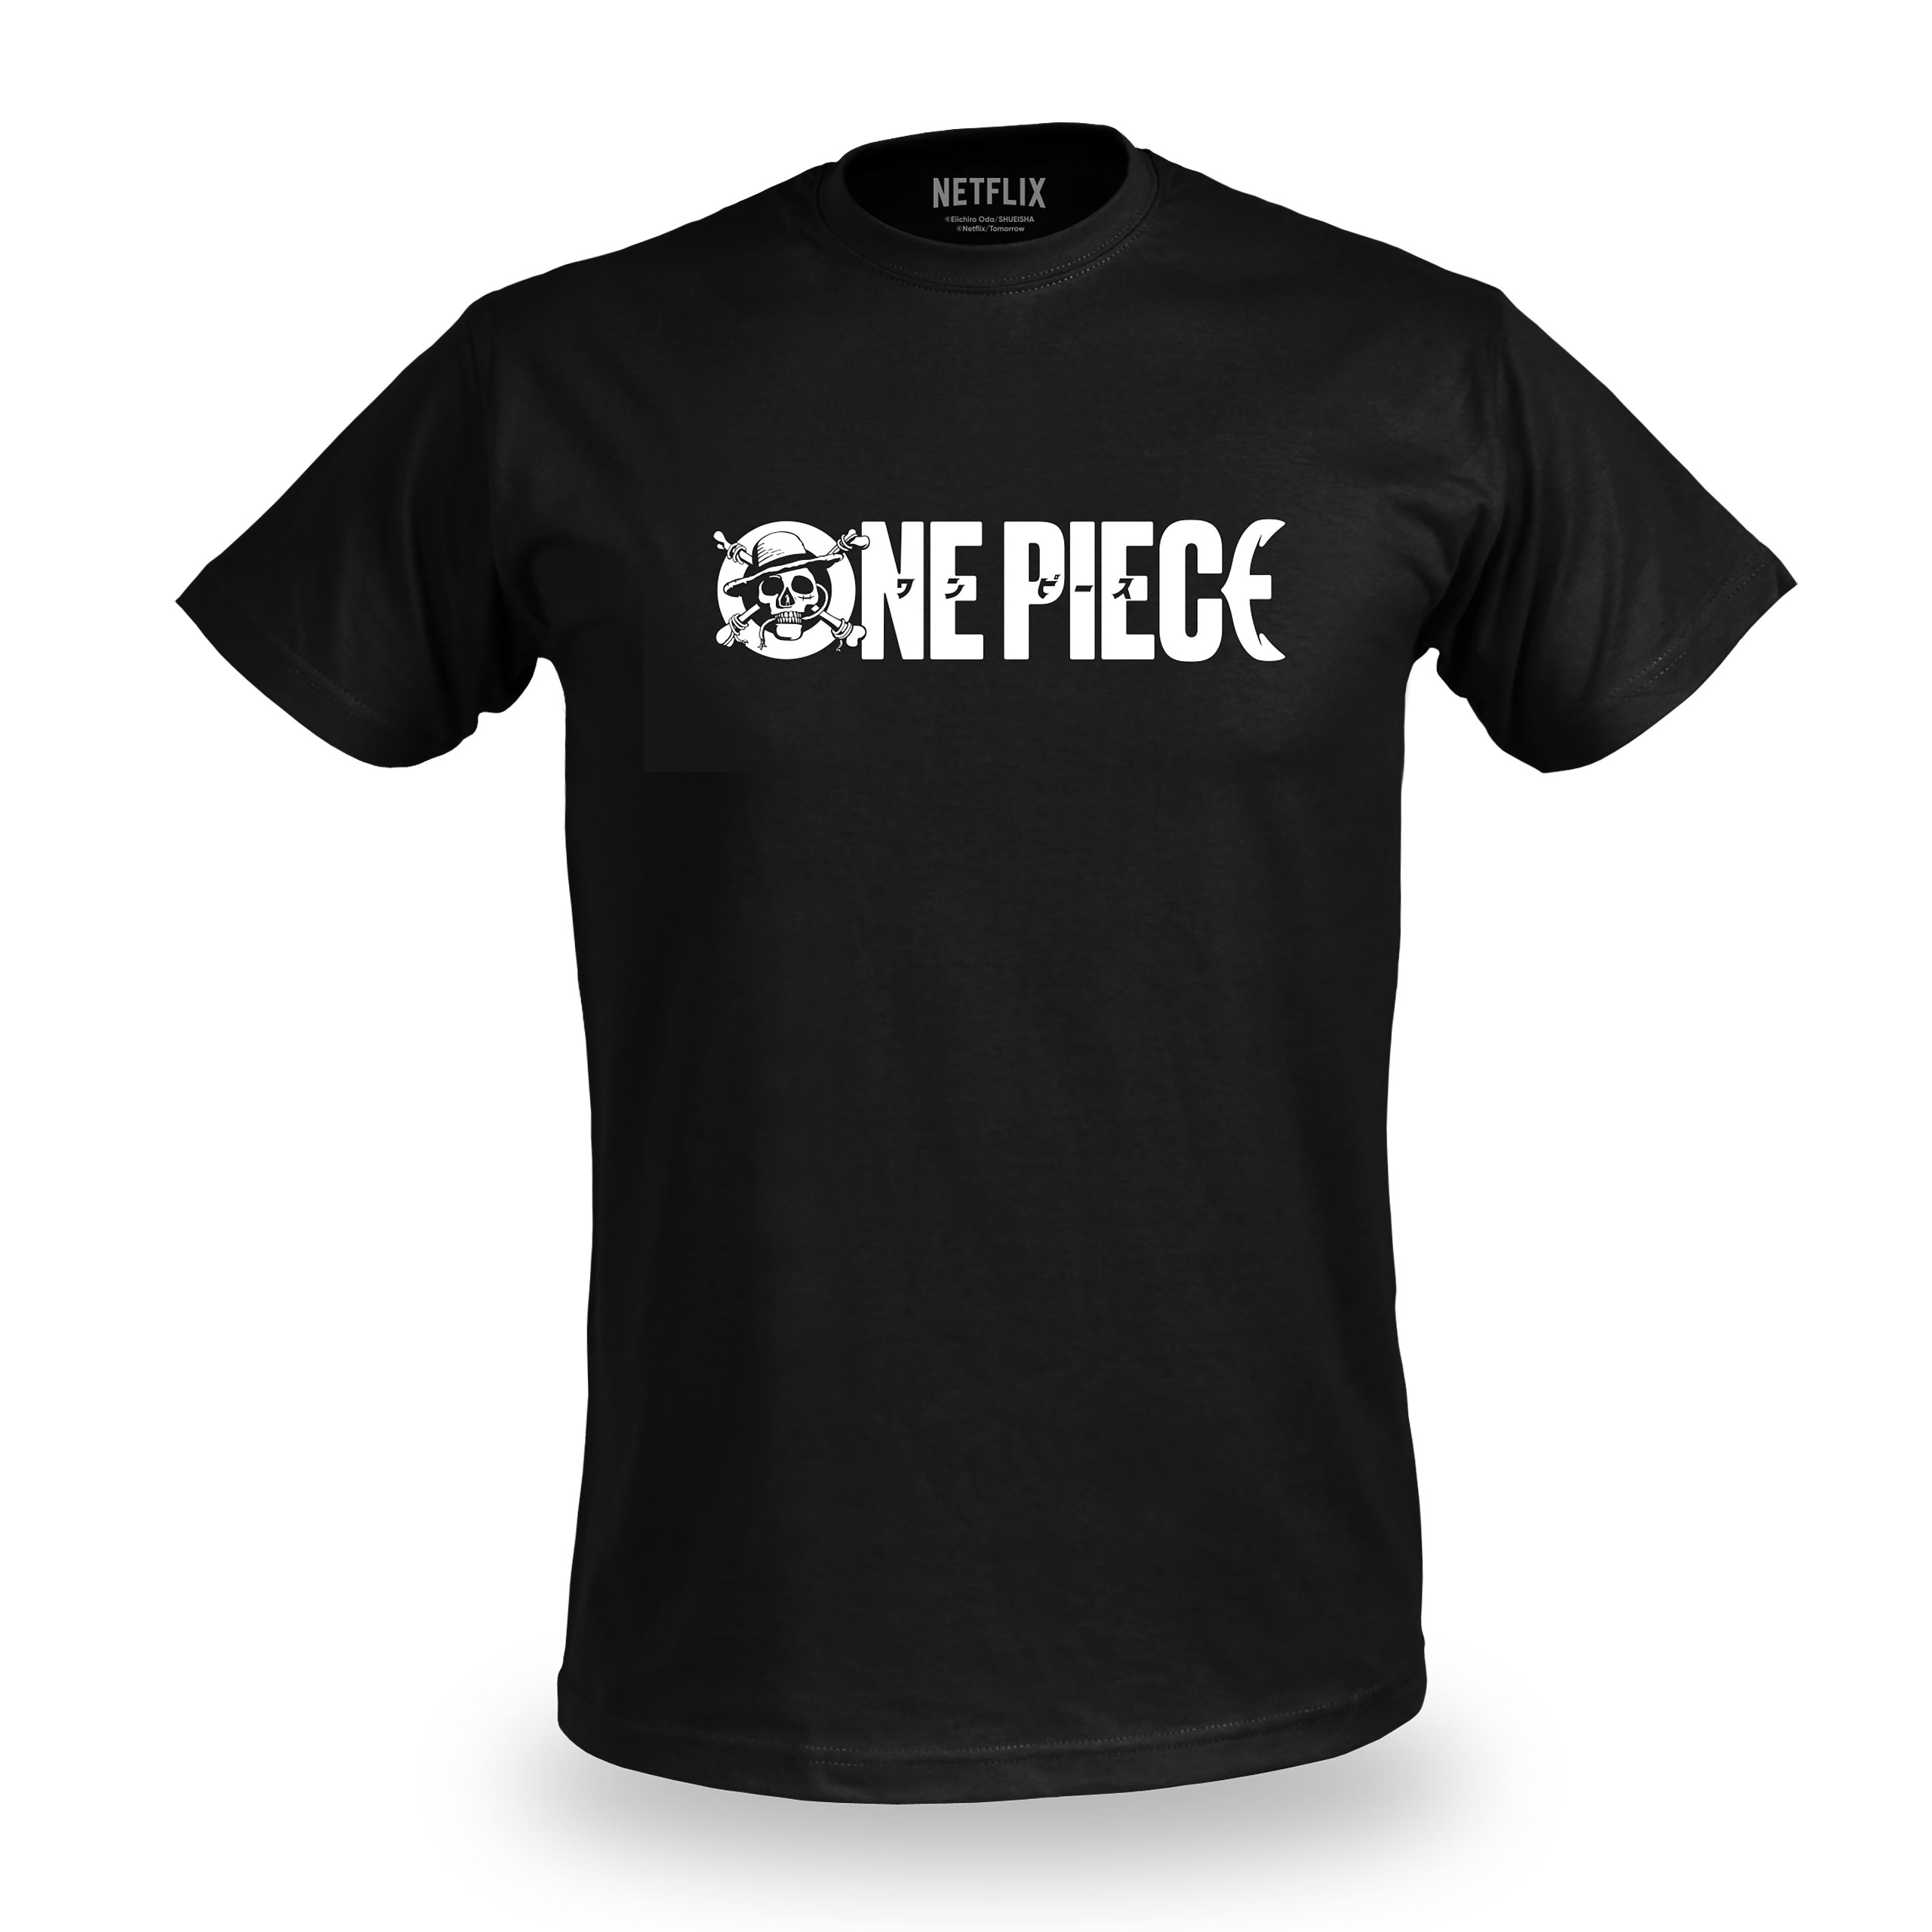 One Piece - Serien Logo T-Shirt schwarz